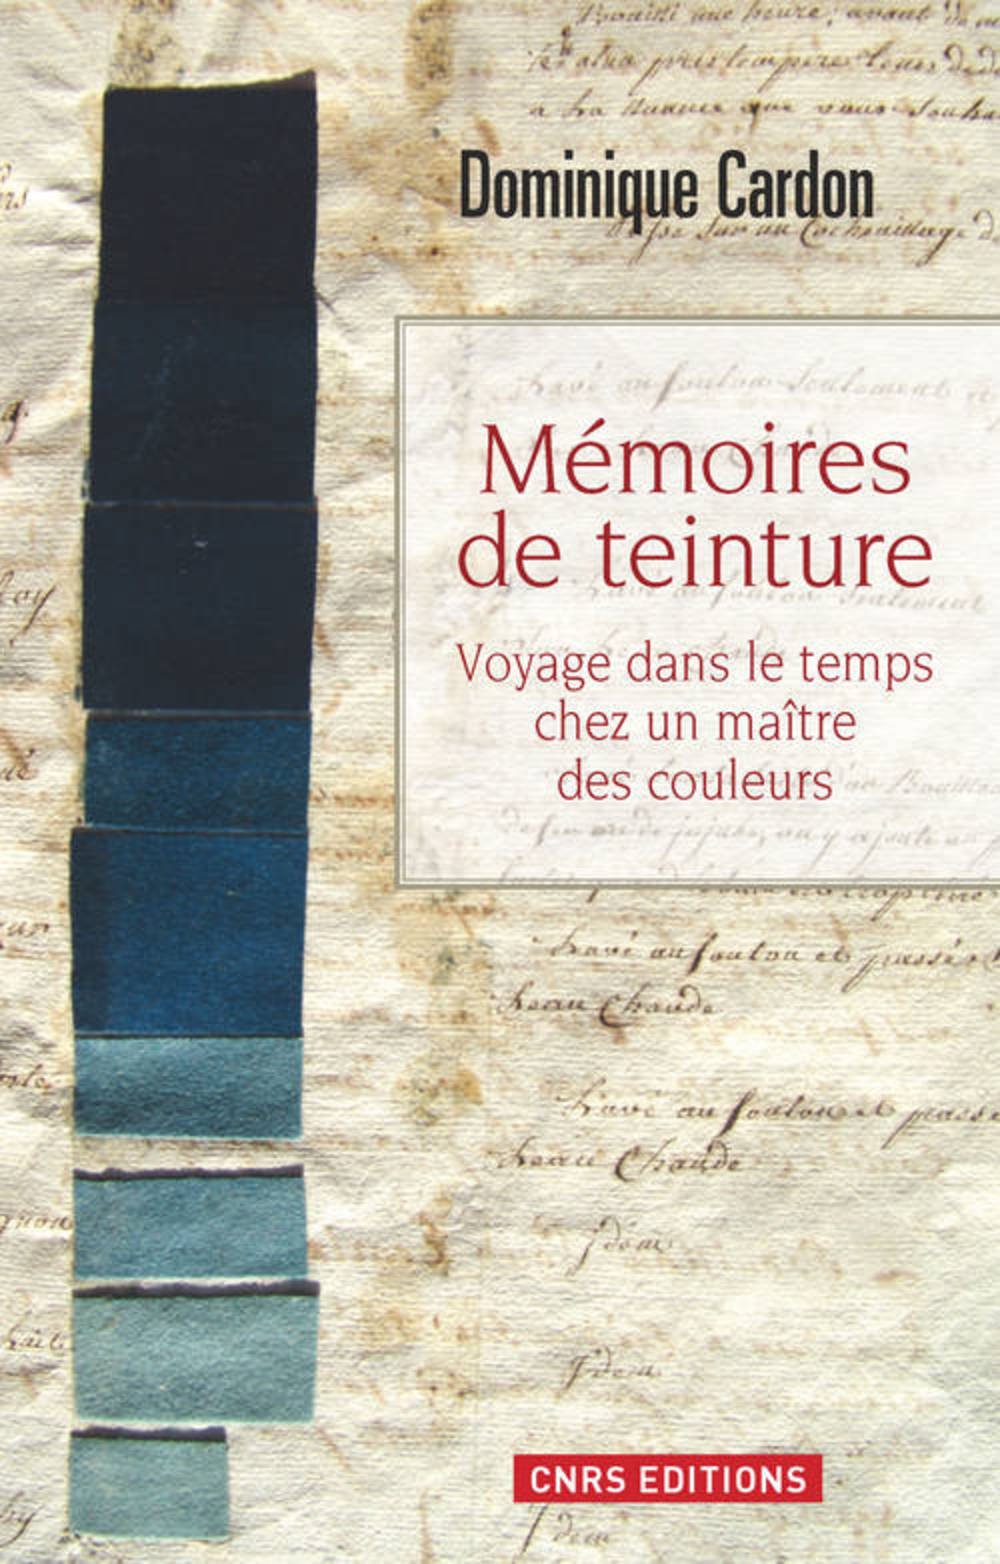 Mémoire de teintures. Voyage dans le temps chez un maître des couleurs, 2013, 416 p.